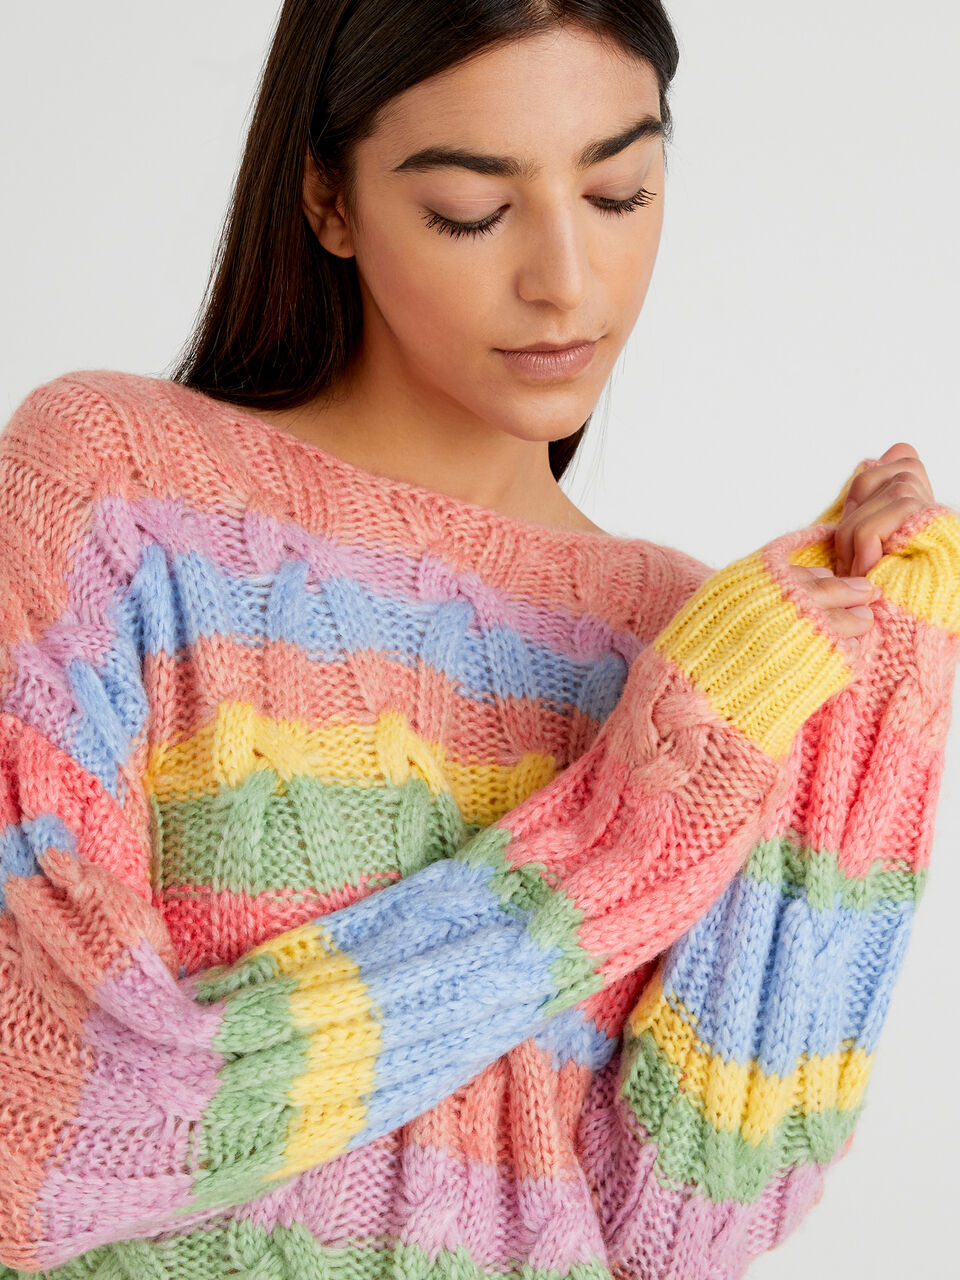 Multicolored boat neck sweater